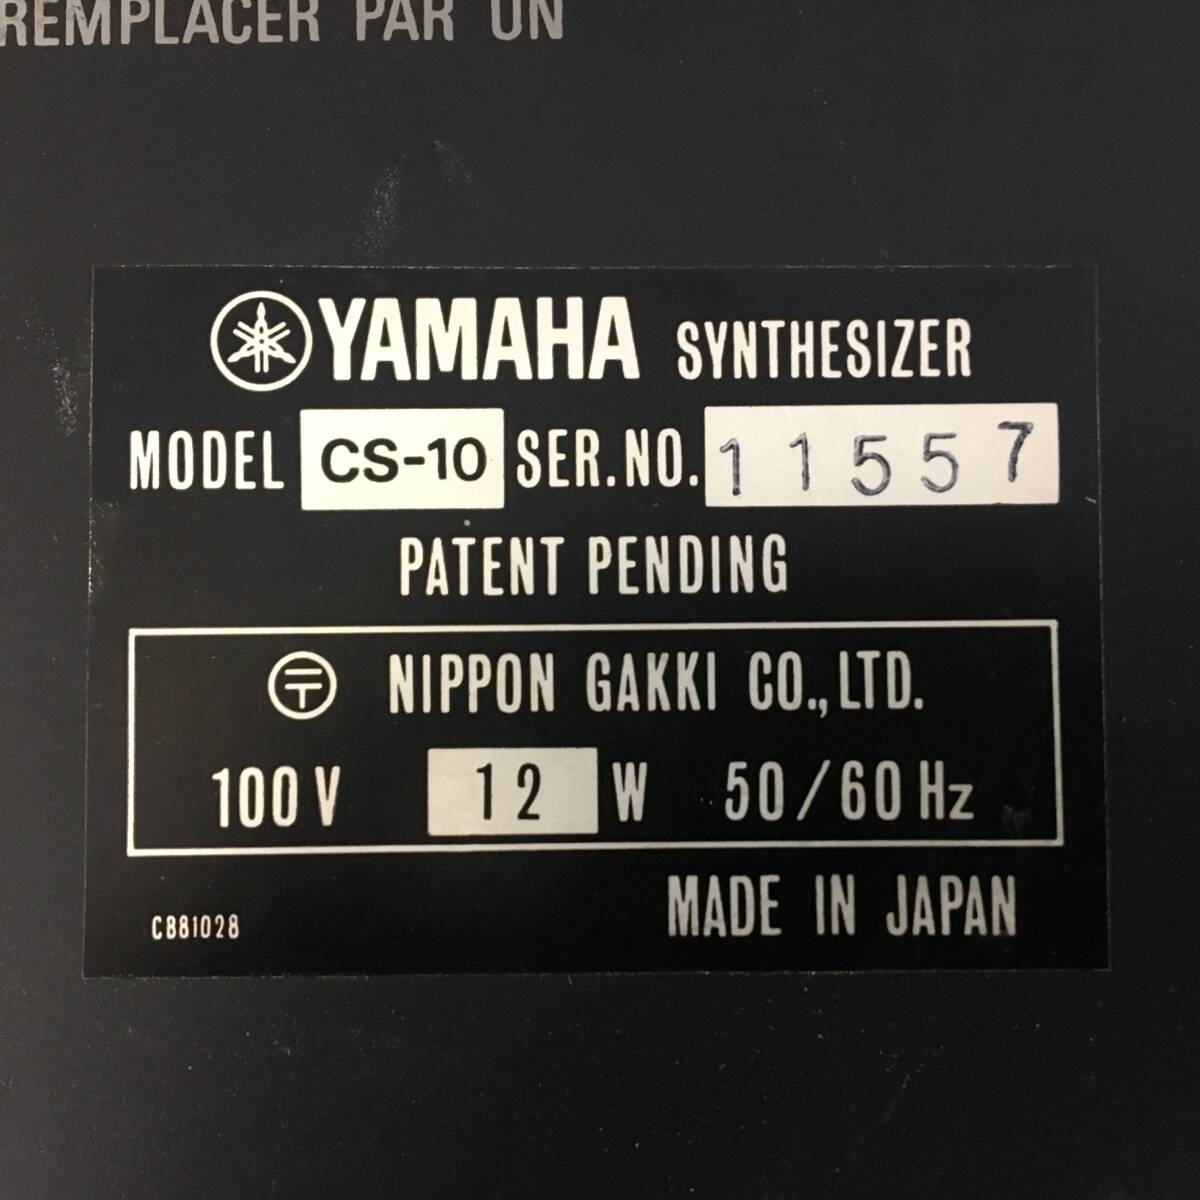 M040-I65-56 YAMAHA ヤマハ シンセサイザー CS-10 通電音出し確認済み 楽器 鍵盤楽器 キーボード